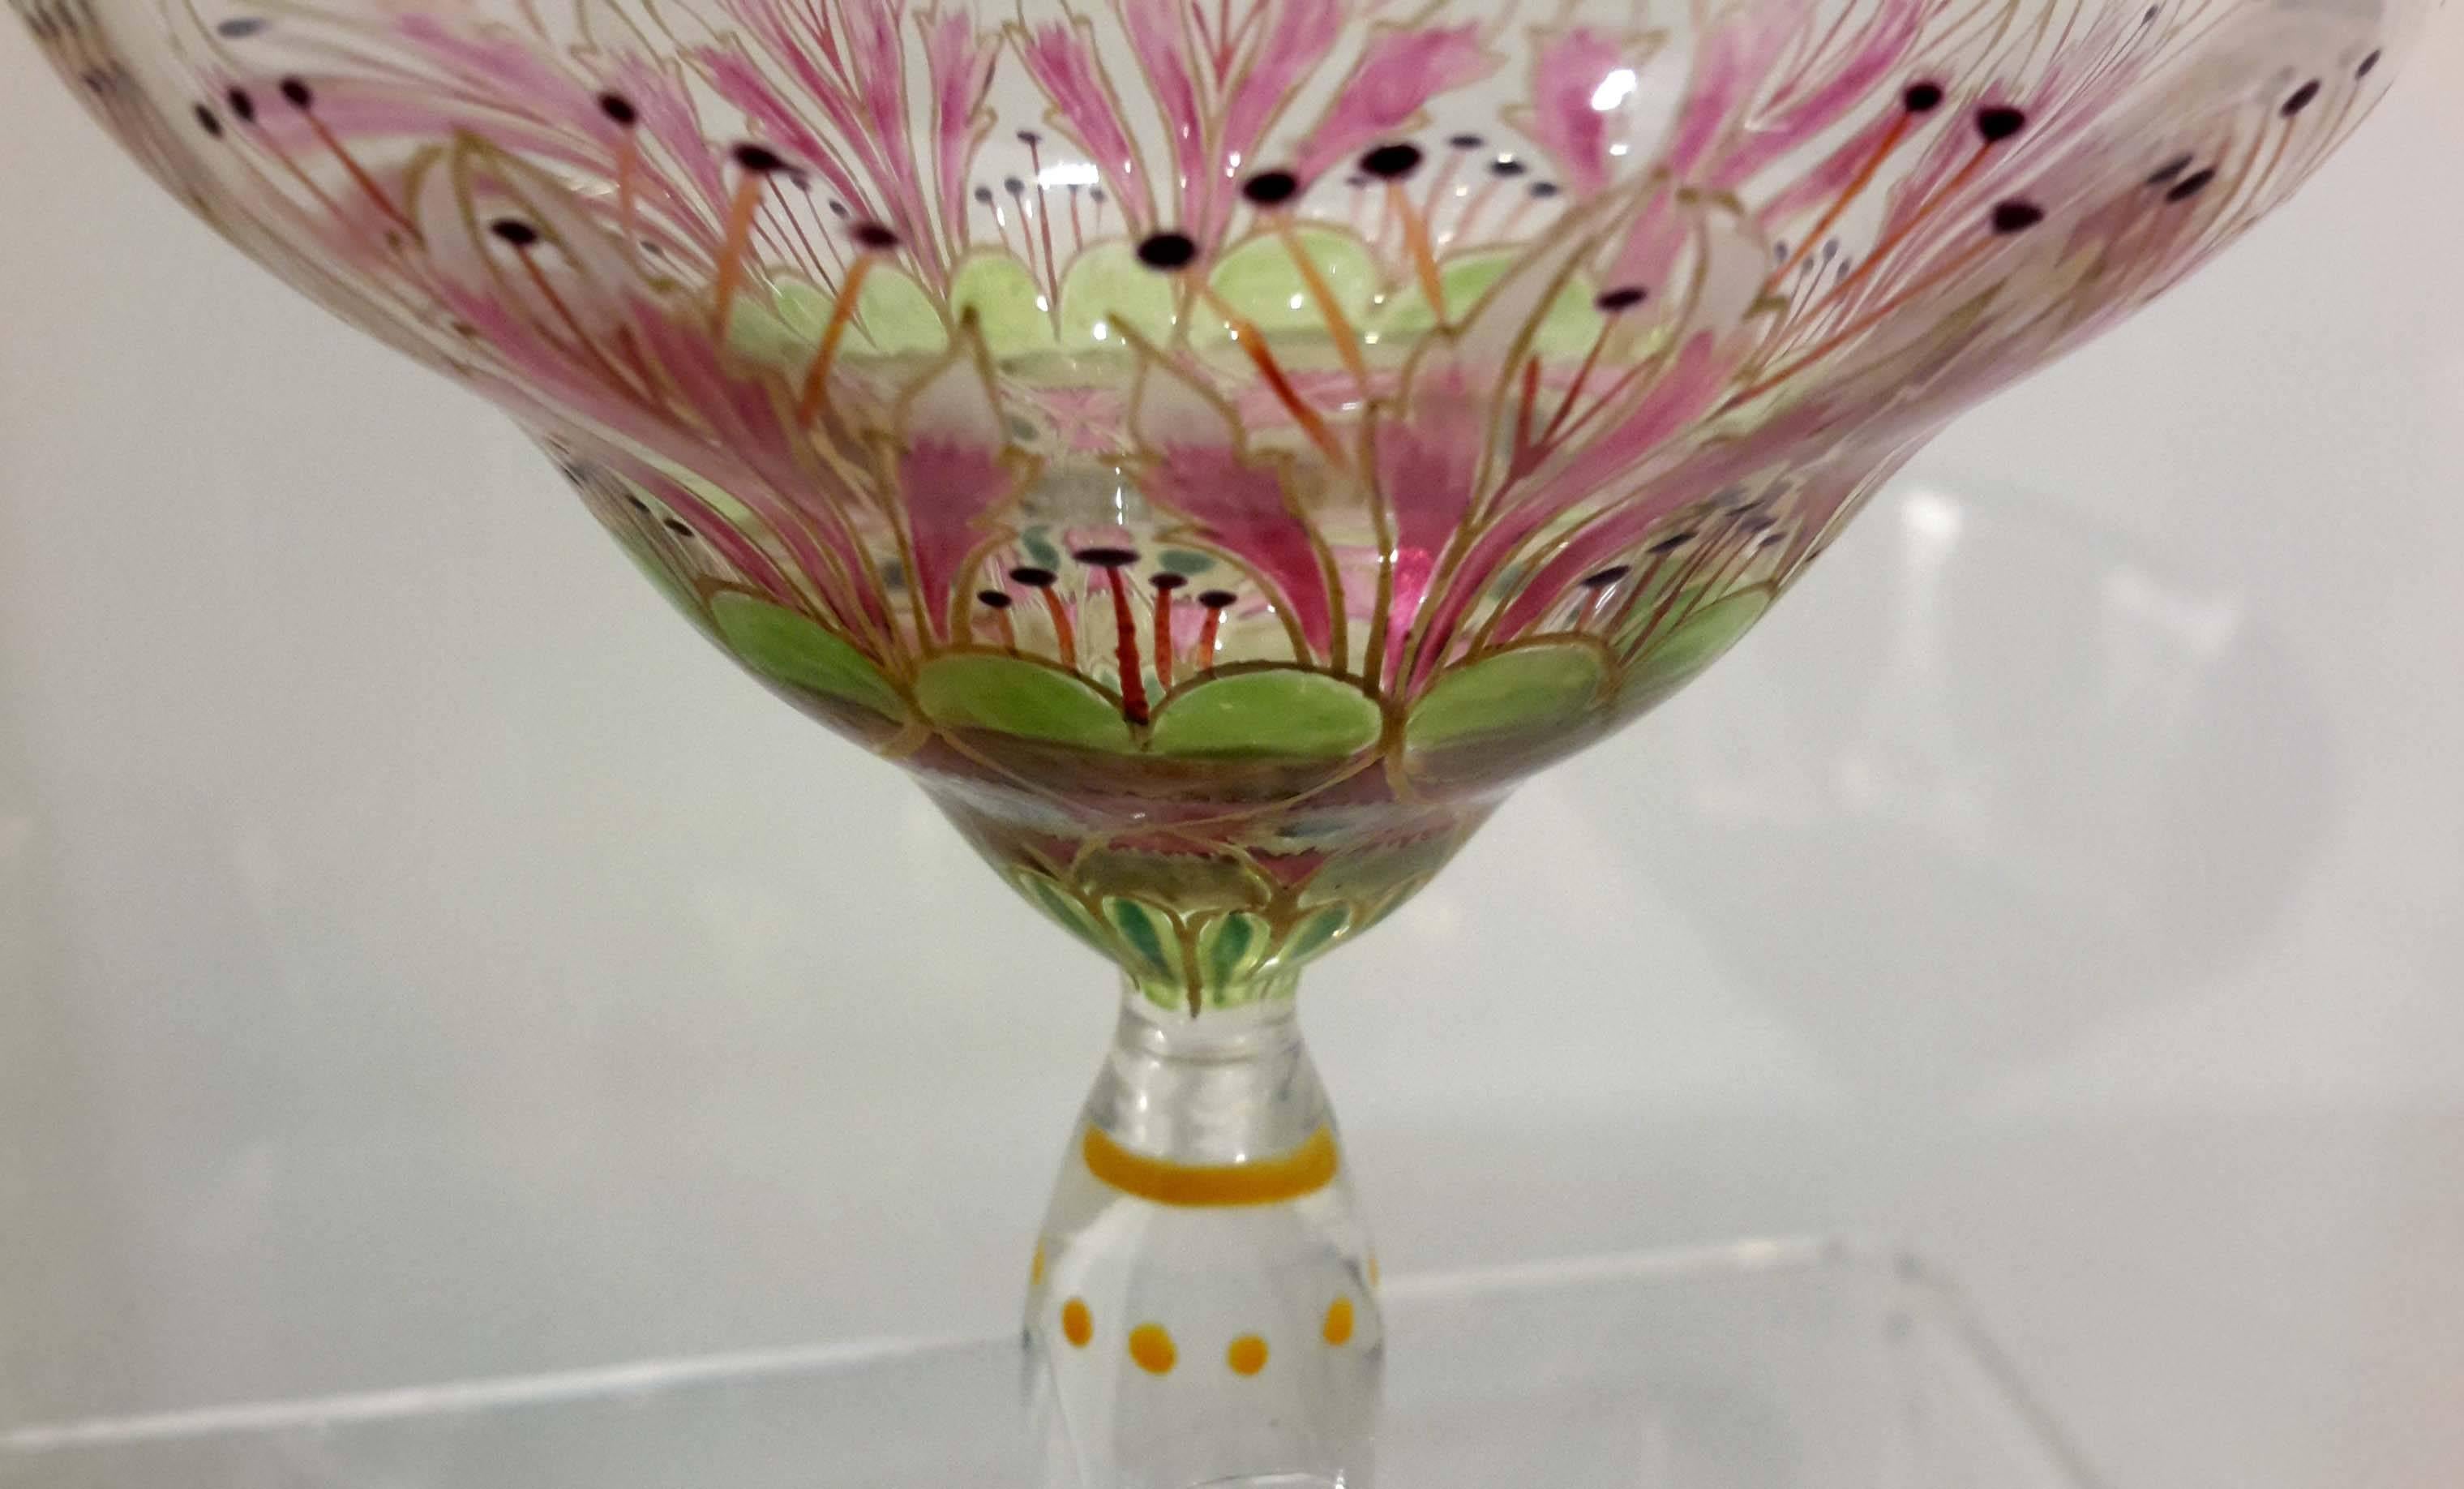 Austrian Rare Monumental Meyr's Neffe Hand Enameled 'Flower Form' Champagne Goblet